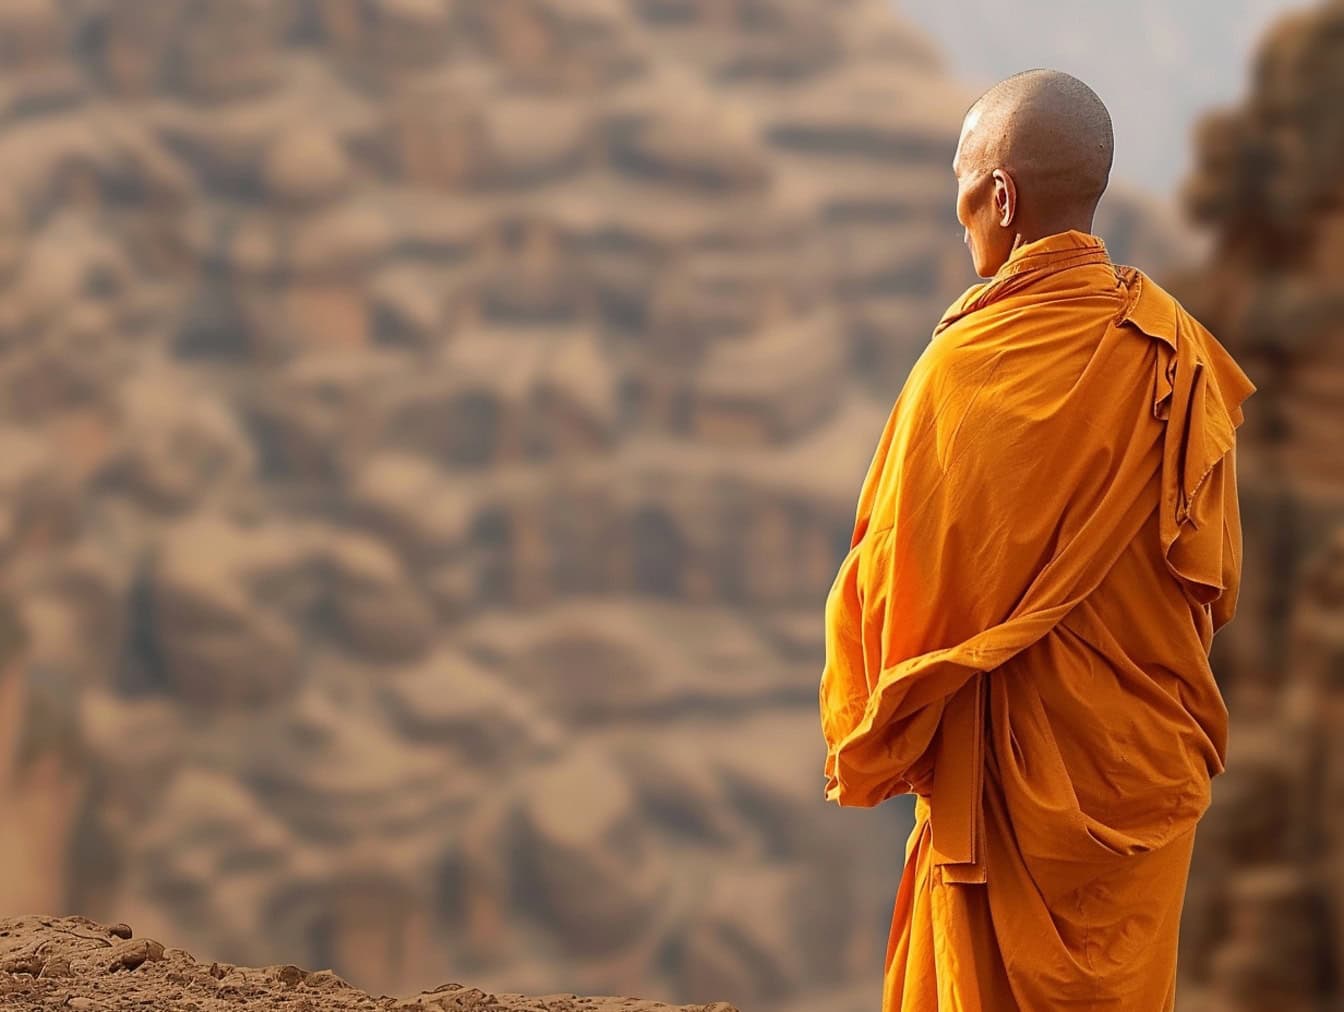 Buddhistický mnich s oholenou hlavou stojí v poušti otočený zády v oranžovém rouchu